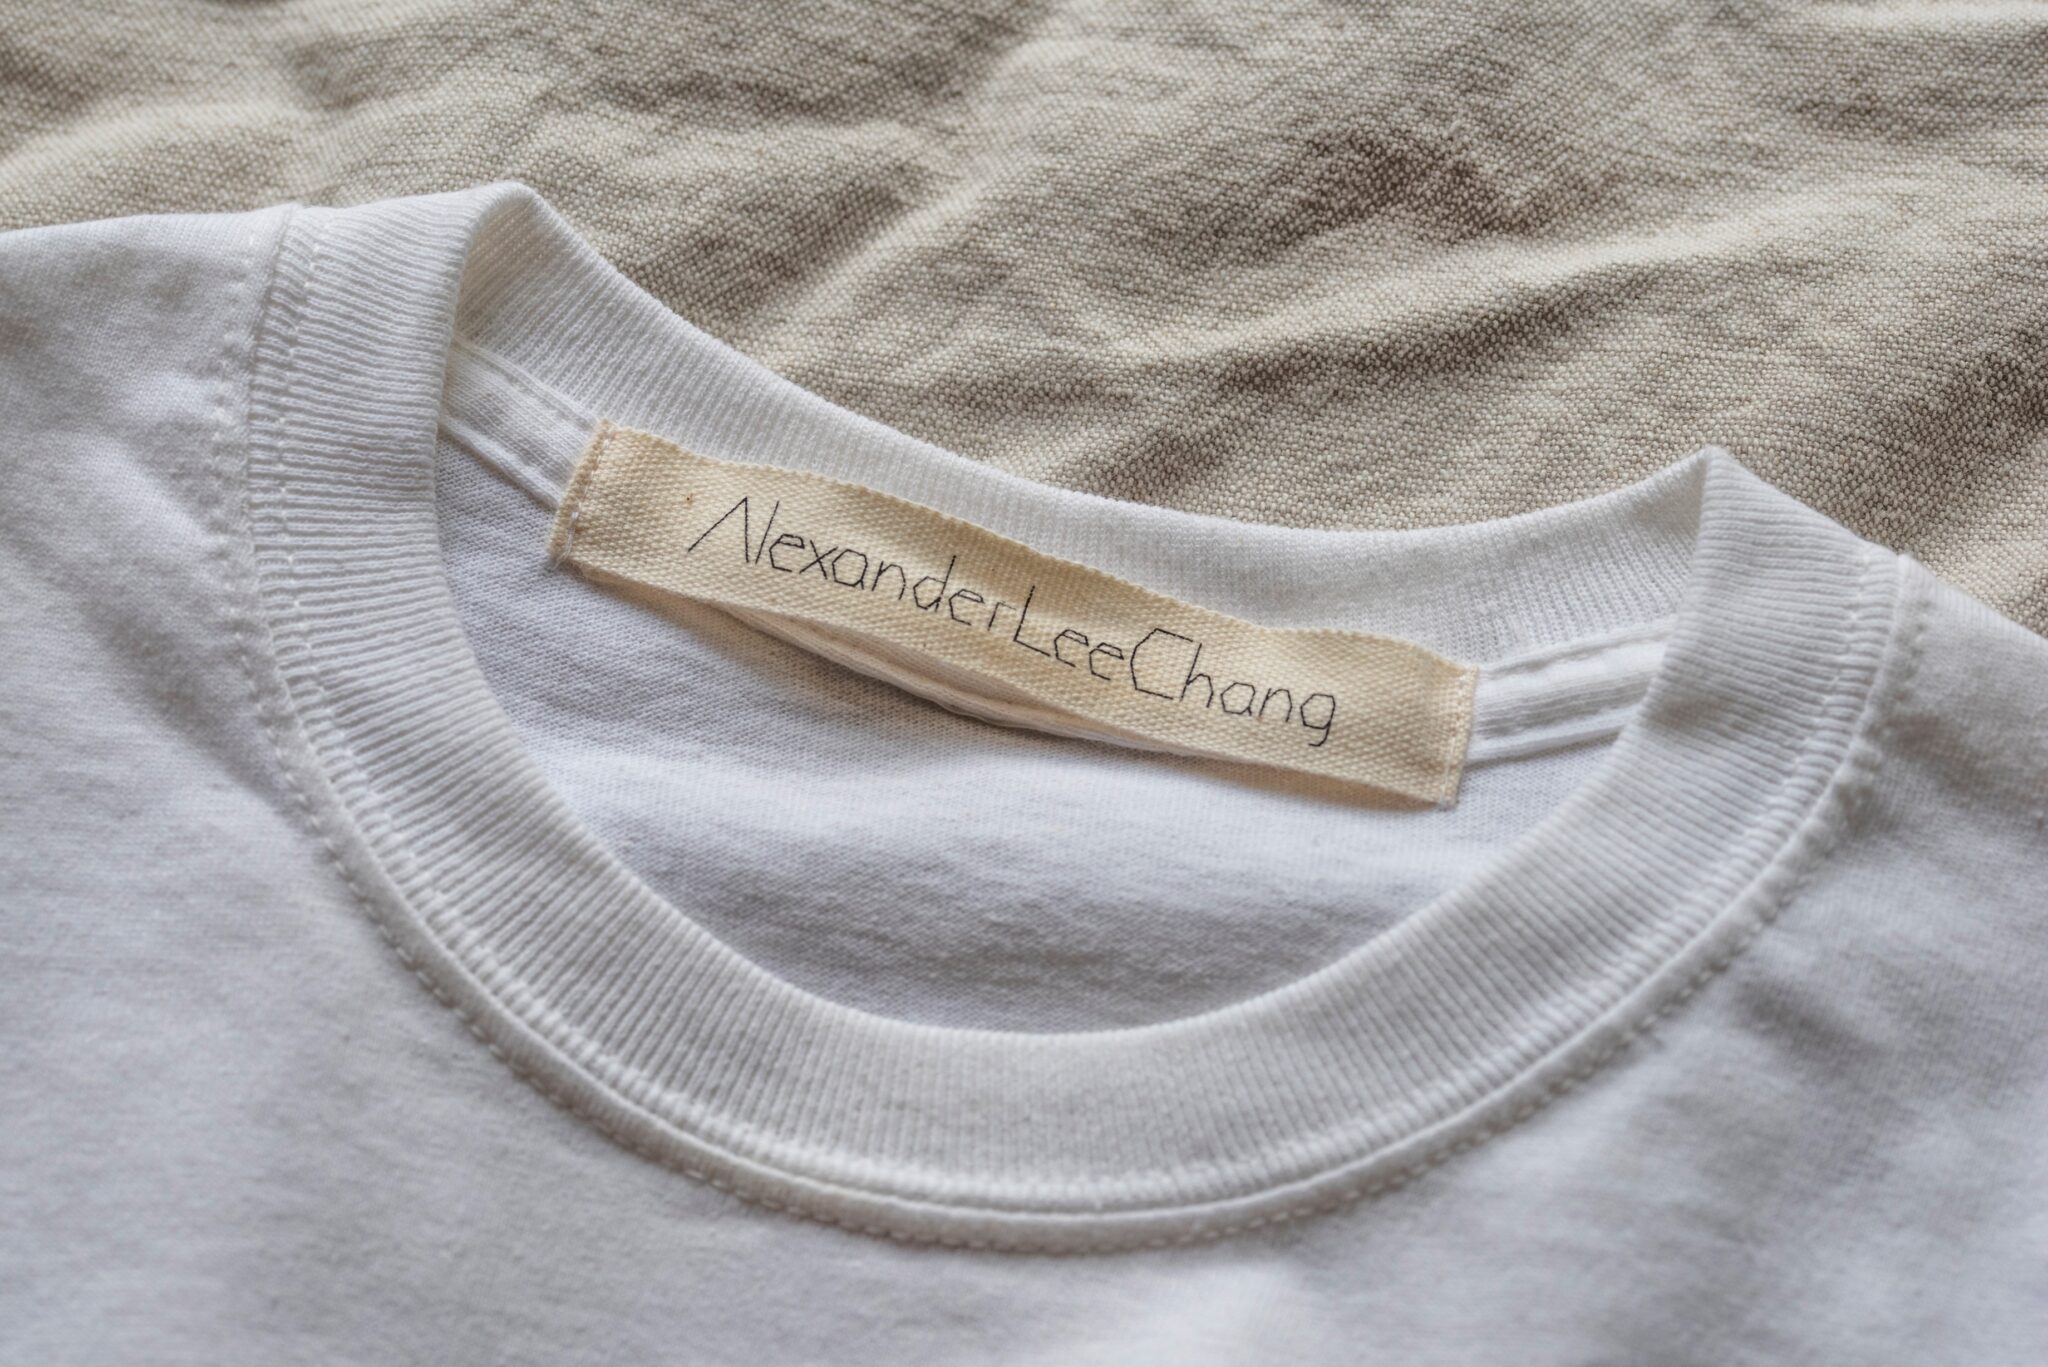 Photo: brand name tag of AlexanderLeeChang